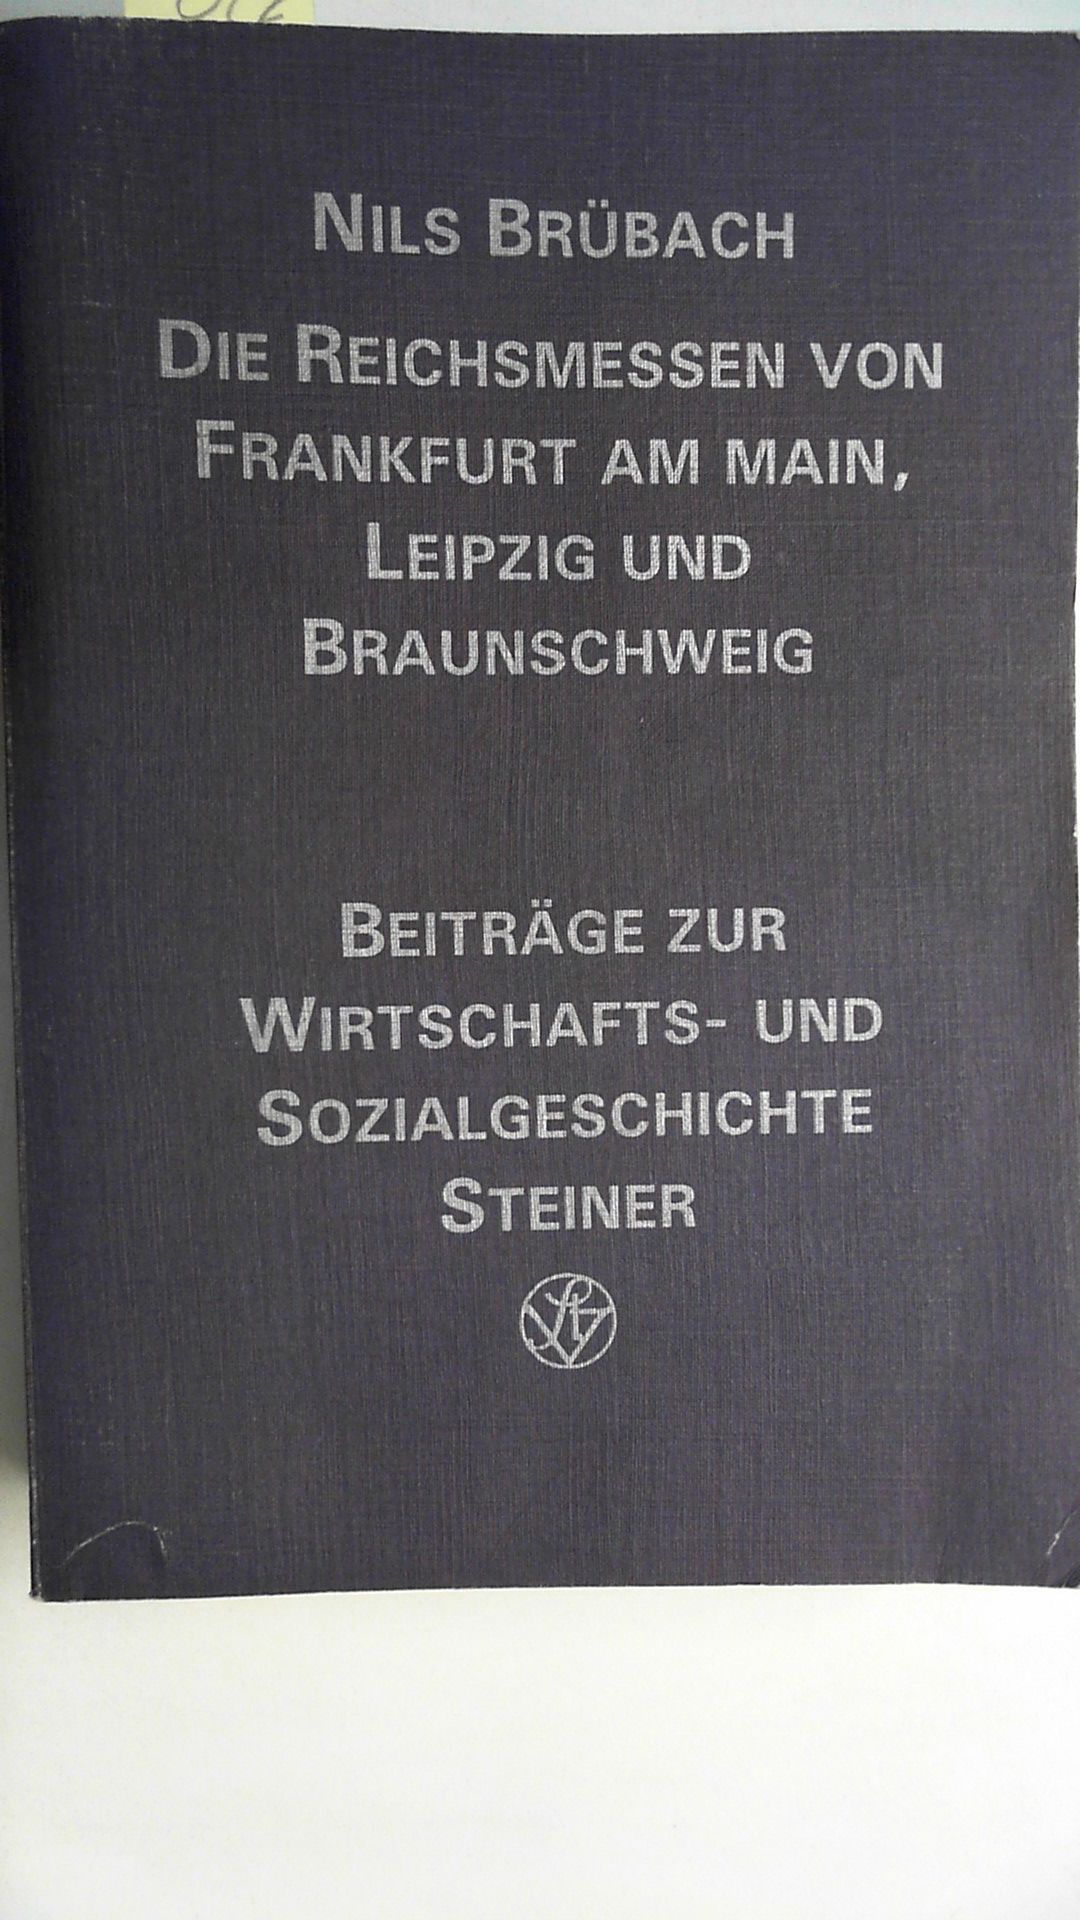 Die Reichsmessen von Frankfurt am Main, Leipzig und Braunschweig: (14. - 18. Jahrhundert) , (Beiträge zur Wirtschafts- und Sozialgeschichte),  Auflage: 1 - Brübach, Nils